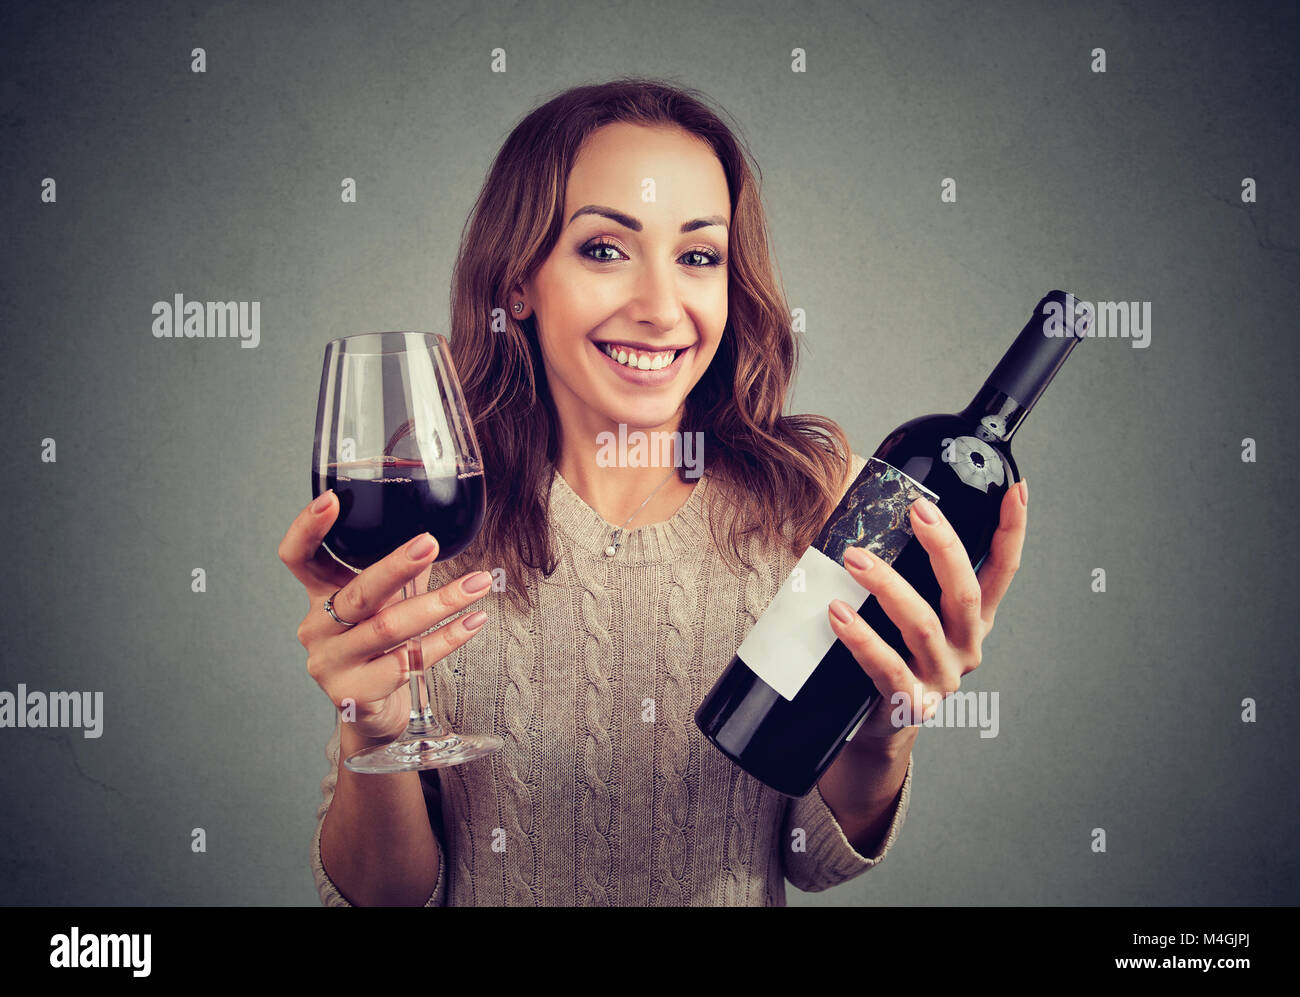 Junge Frau mit einem Glas Wein und Flasche glücklich an Kamera genießen Geschmack suchen. Stockfoto